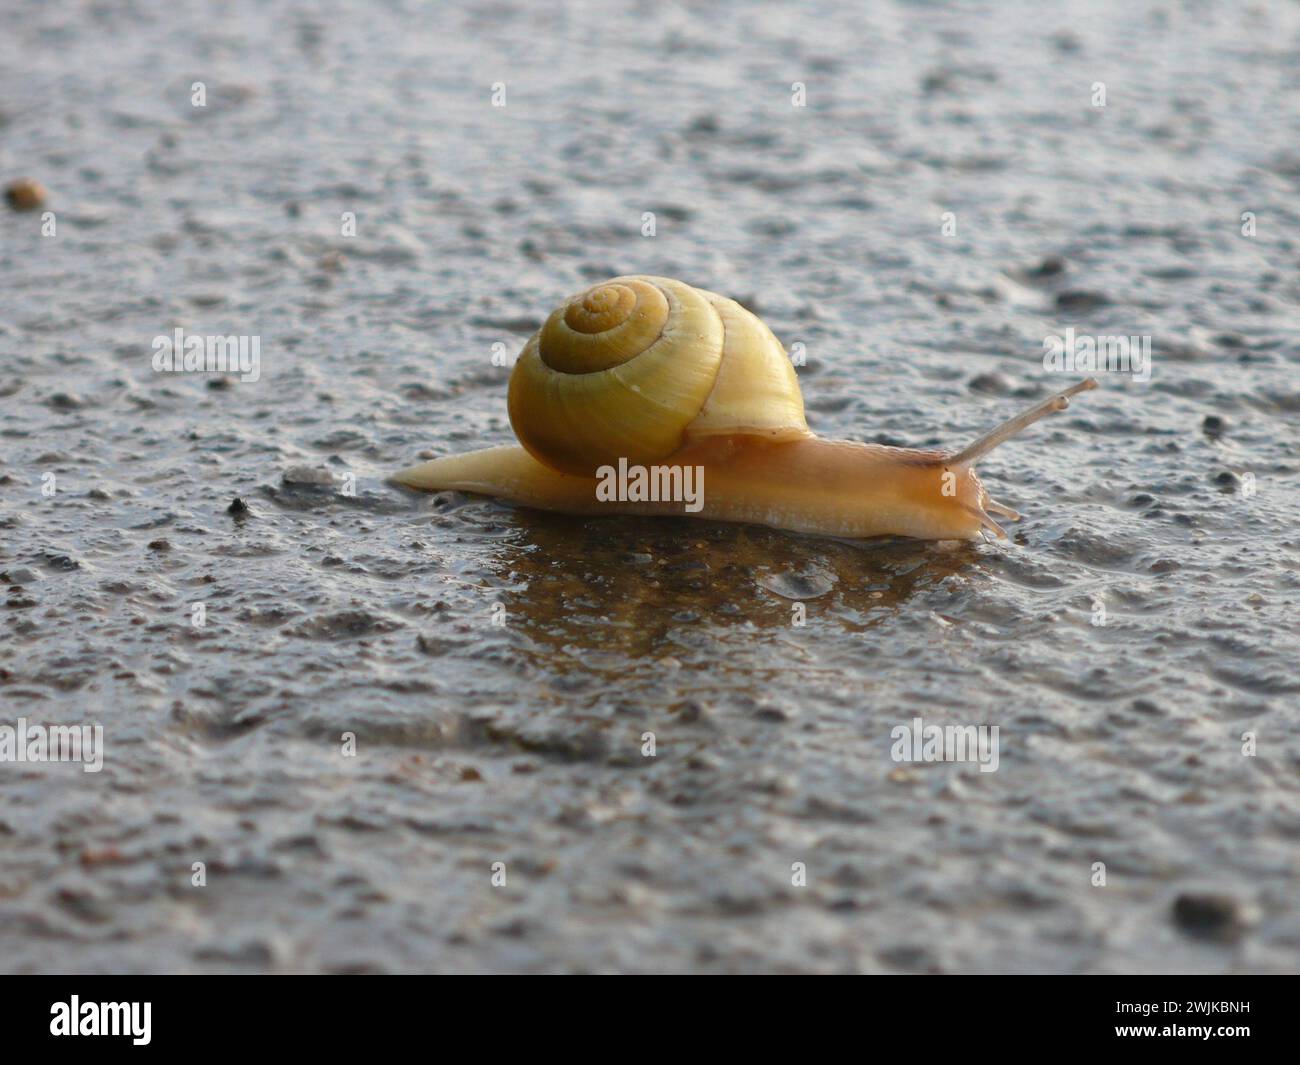 Un escargot déterminé fait lentement son chemin à travers le trottoir, s'efforçant de naviguer en toute sécurité sur la route Banque D'Images